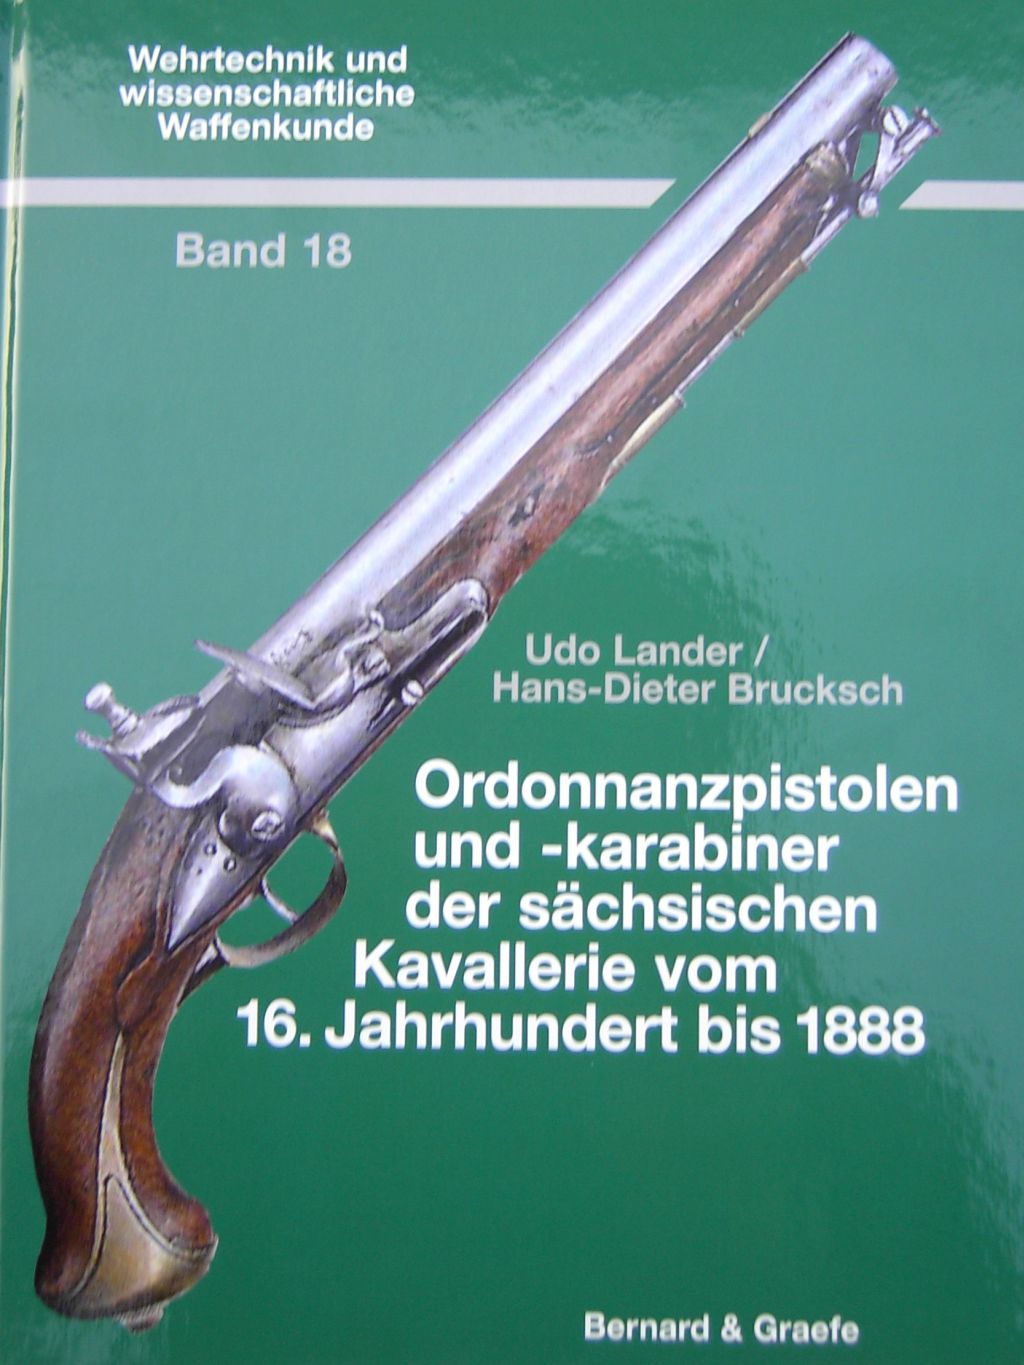 Udo Lander - Hans Dieter Brucksch, Ordonnanzpistolen und Karabiner der sächsischen Kavallerie vom 16. Jahrhundert bis 1888